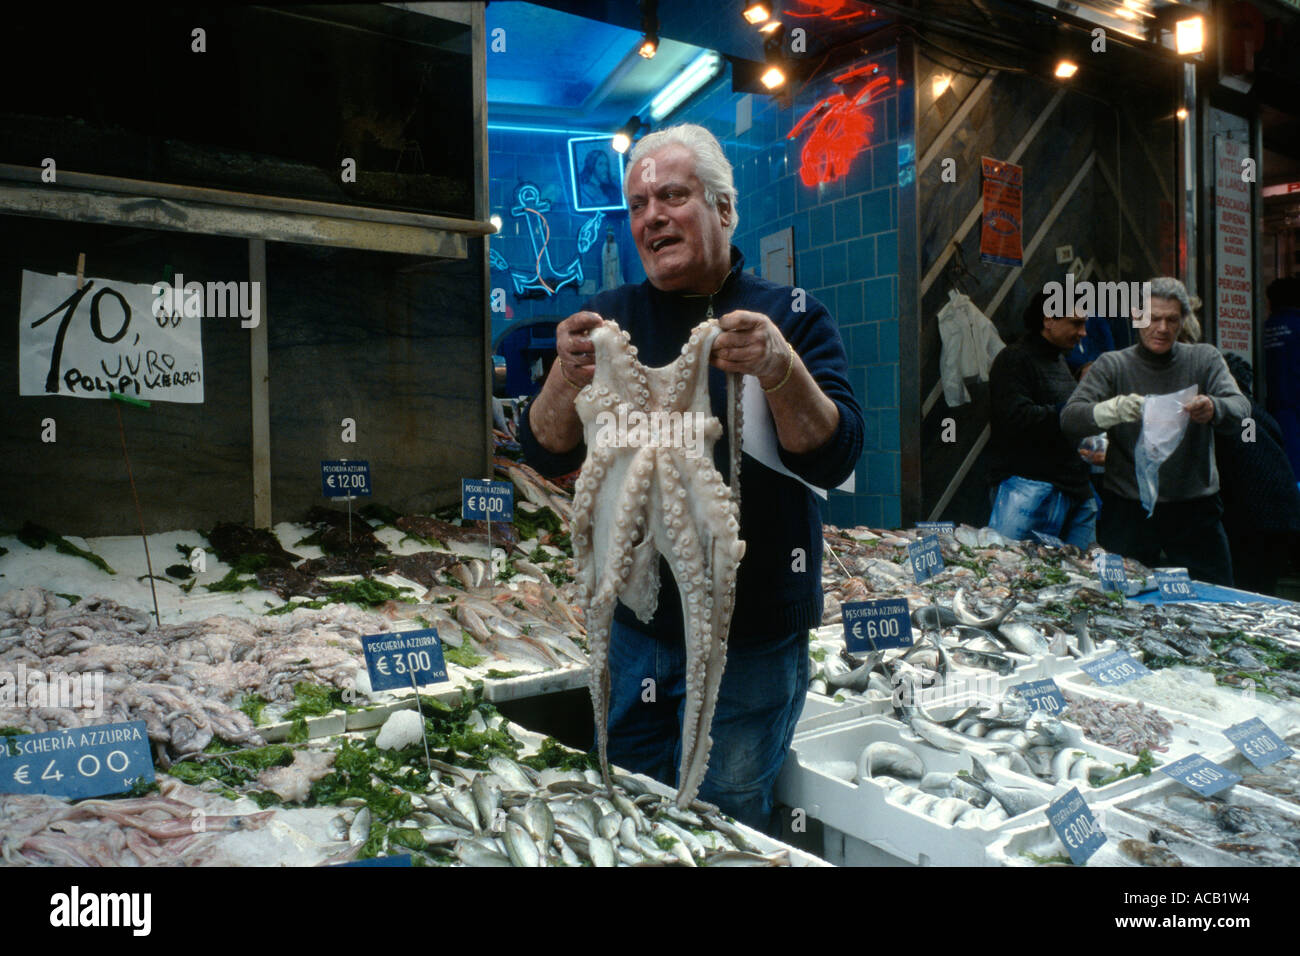 Napoli Italia Mercato del Pesce Pescheria Azzurra su La Pignasecca Foto Stock